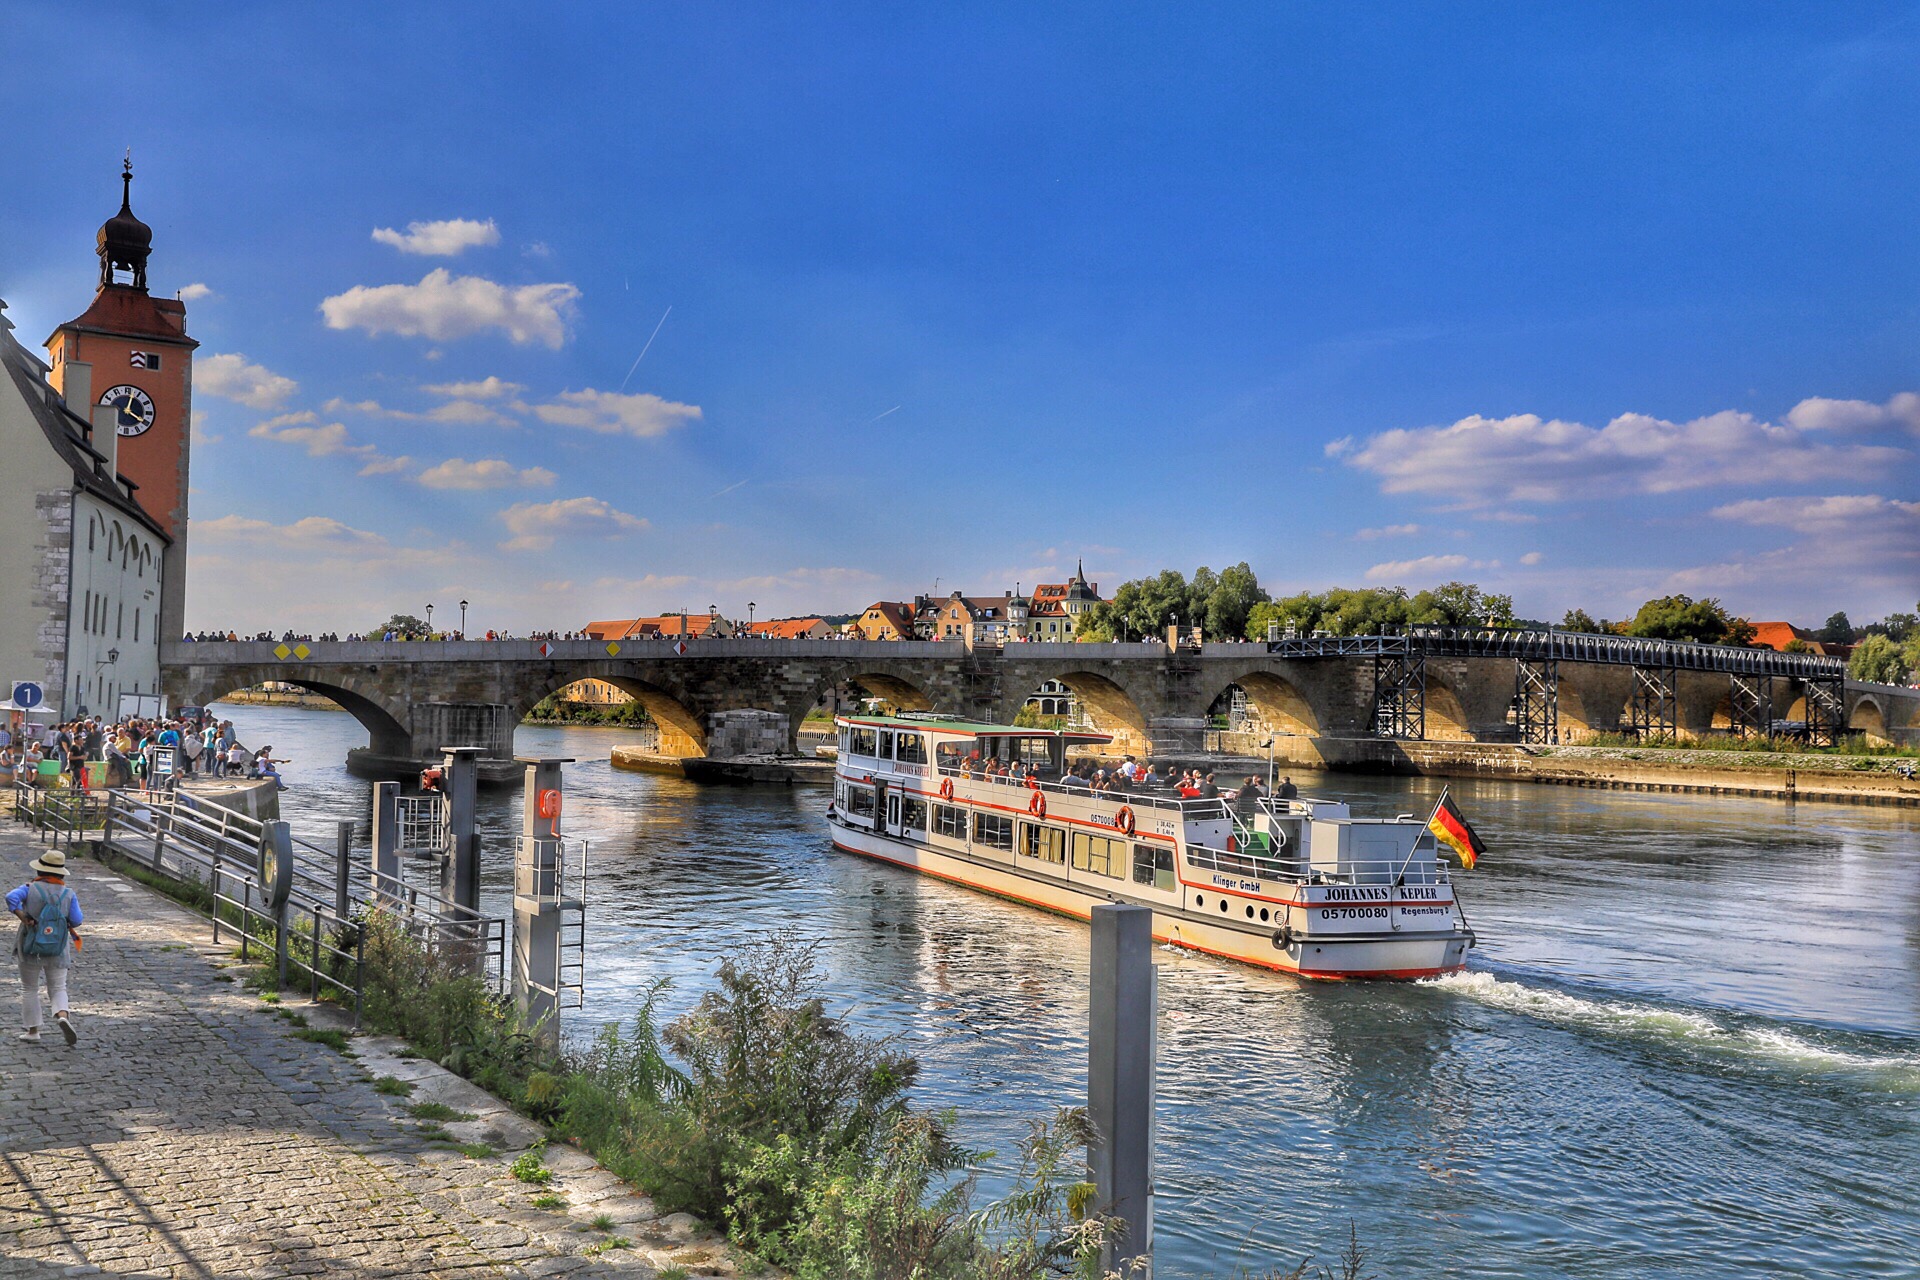 雷根斯堡 是多瑙河边一个美丽的古都，在 慕尼黑 以北140公里处。它历史悠久，自 罗马 时代便是沿多